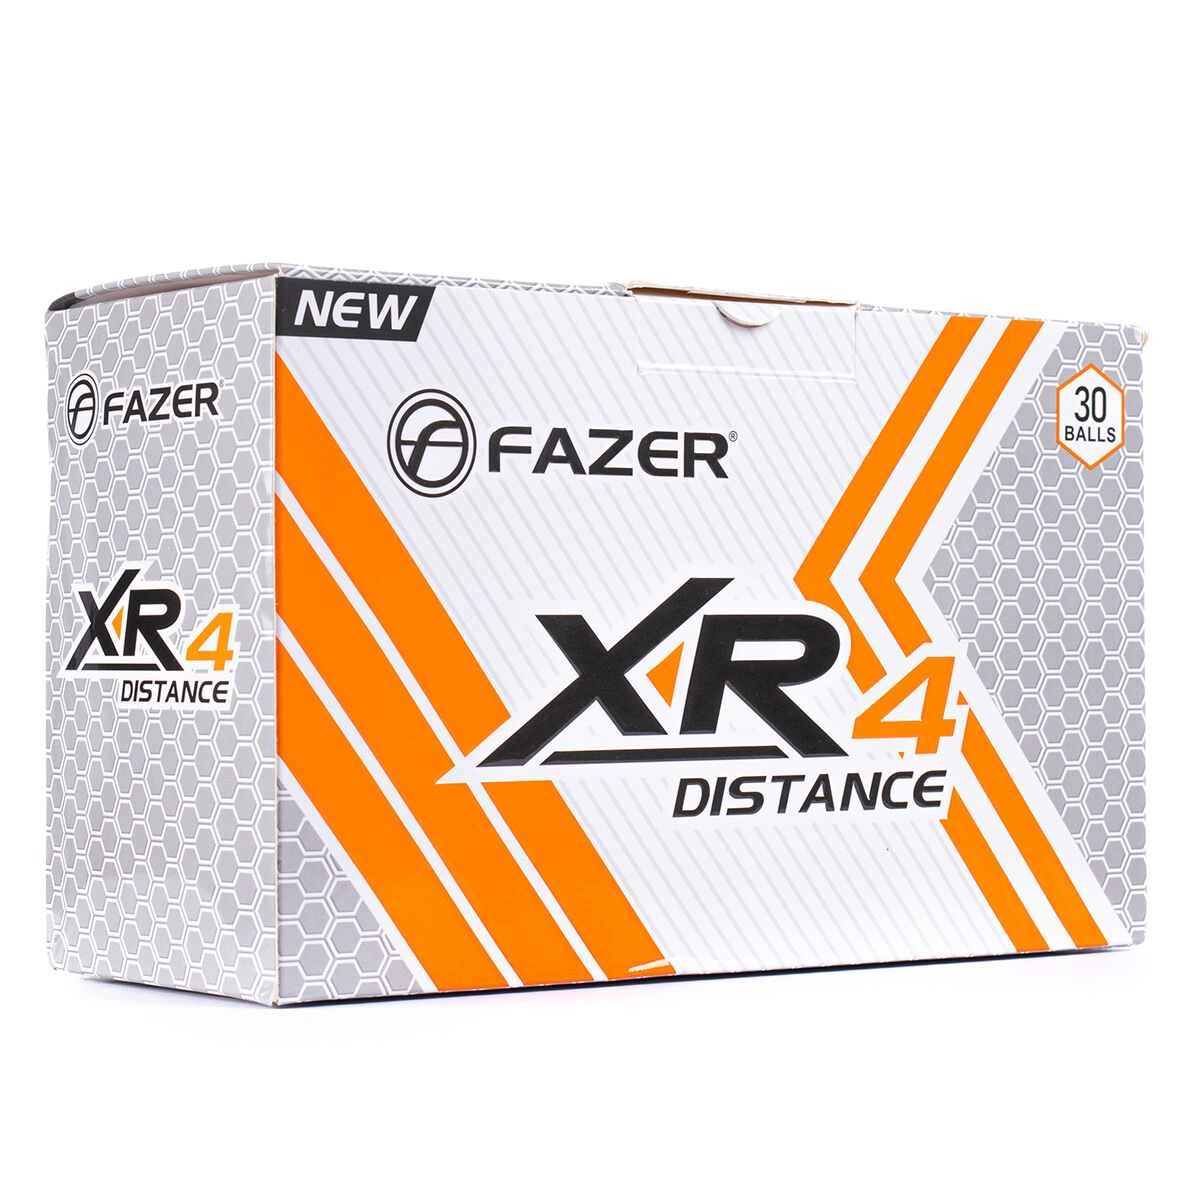 Fazer White Dimple XR4 Distance 30 Golf Balls Pack, Size: One Size | American Golf von Fazer